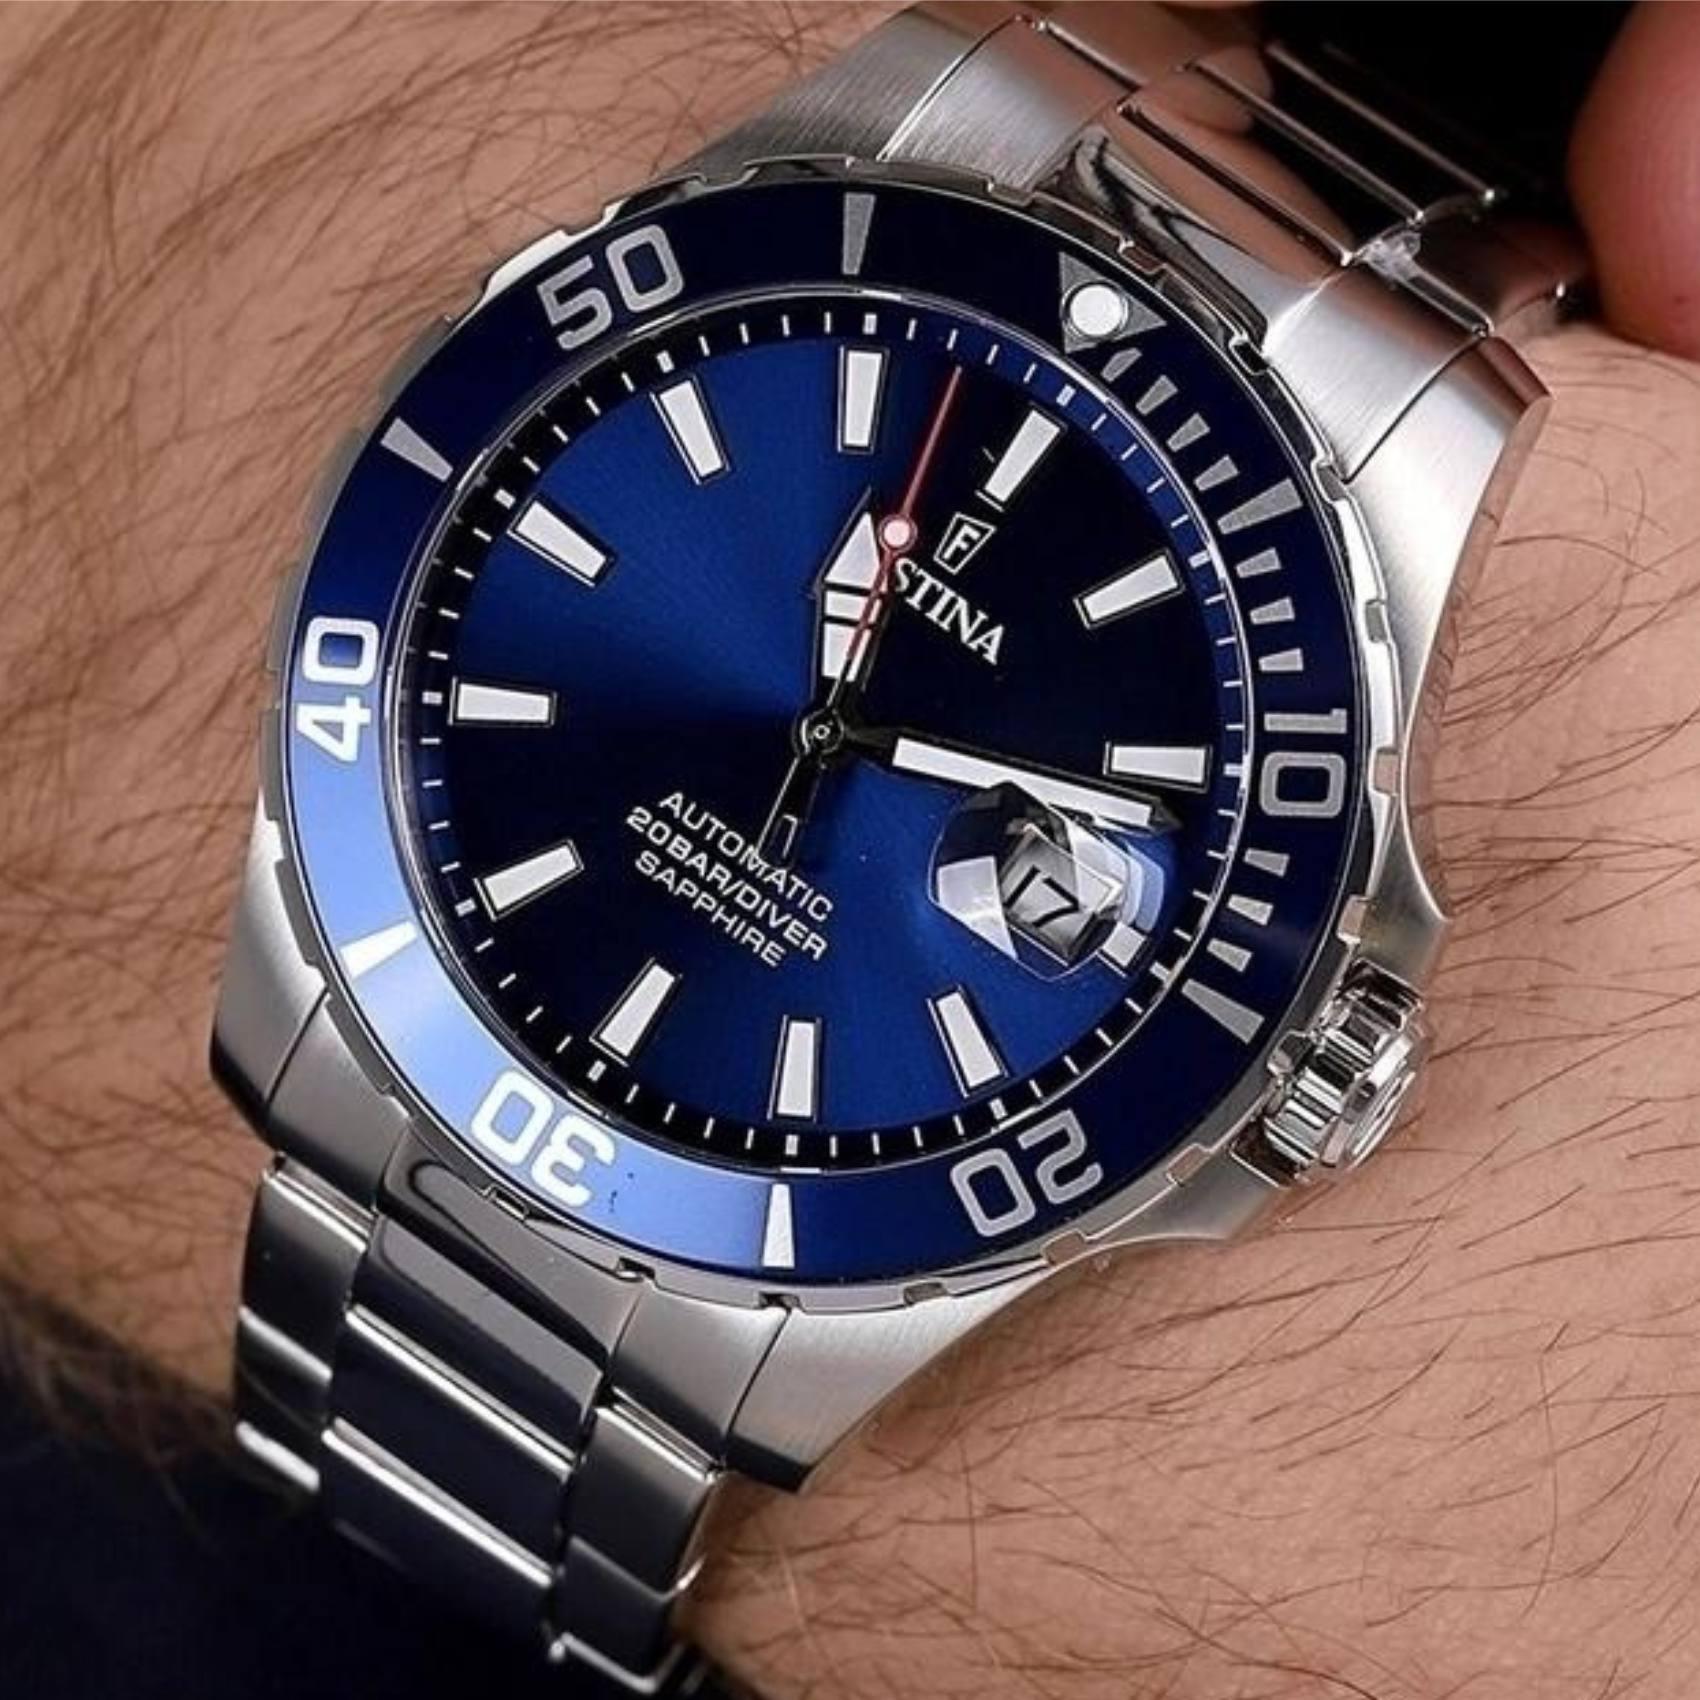 Καταδυτικό ρολόι Festina Diver F20531/3 με ασημί μπρασελέ, μπλε καντράν με ένδειξη ημερομηνίας αυτόματο μηχανισμό και στεφάνι διαμέτρου 44mm.